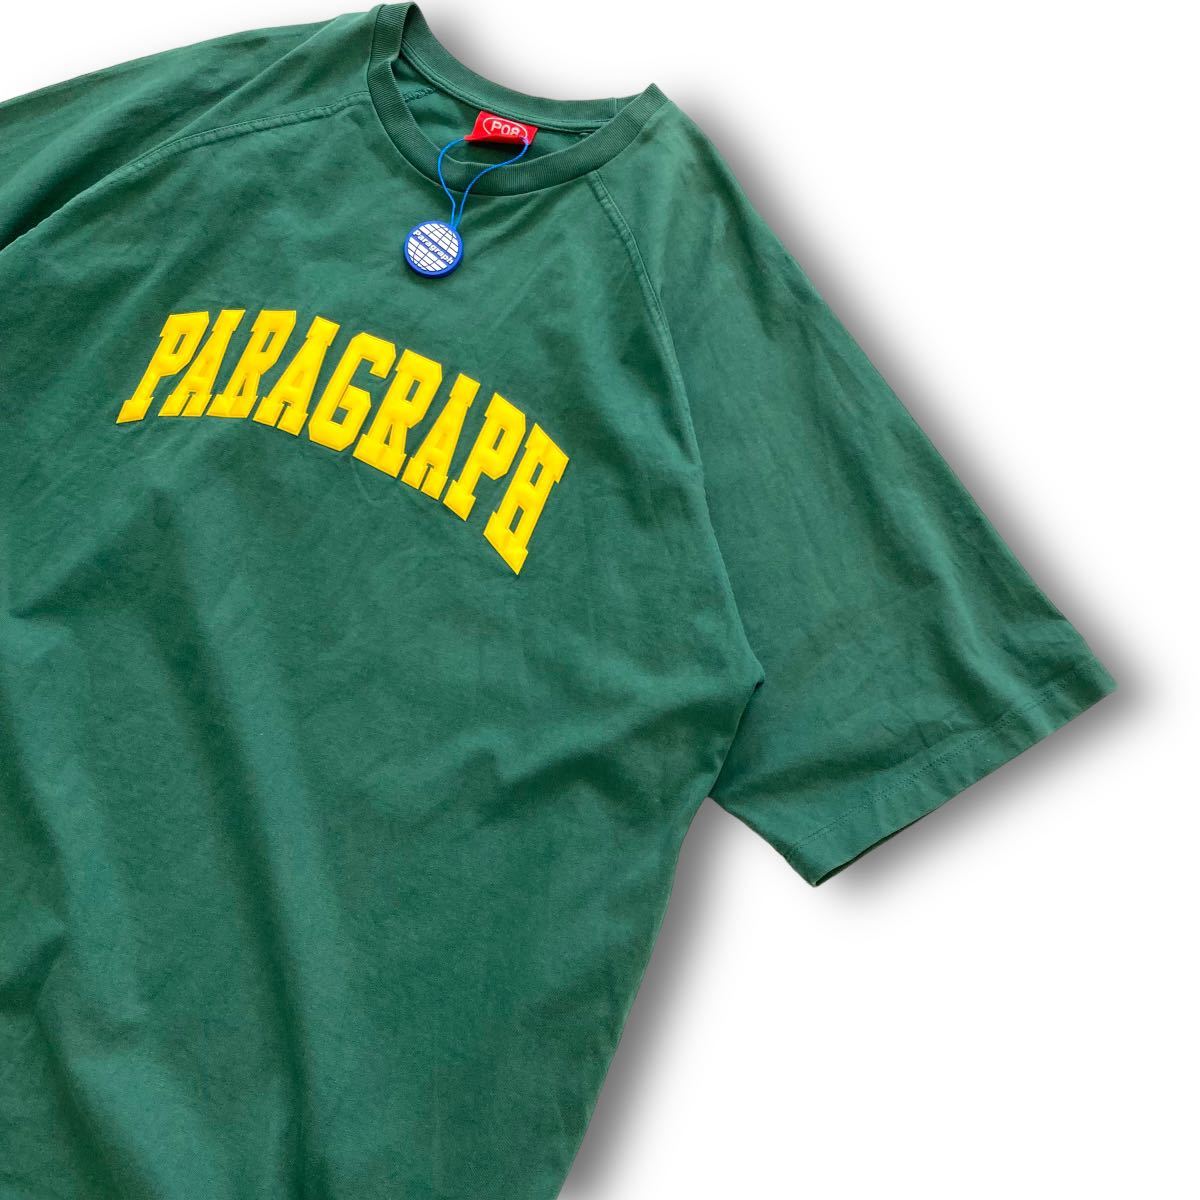 【PARAGRAPH】パラグラフ アーチ立体ロゴ Tシャツ 緑 グリーン オーバーサイズ ビッグシルエット ゆるだぼ コムドット タグ付き 刺繍ロゴ